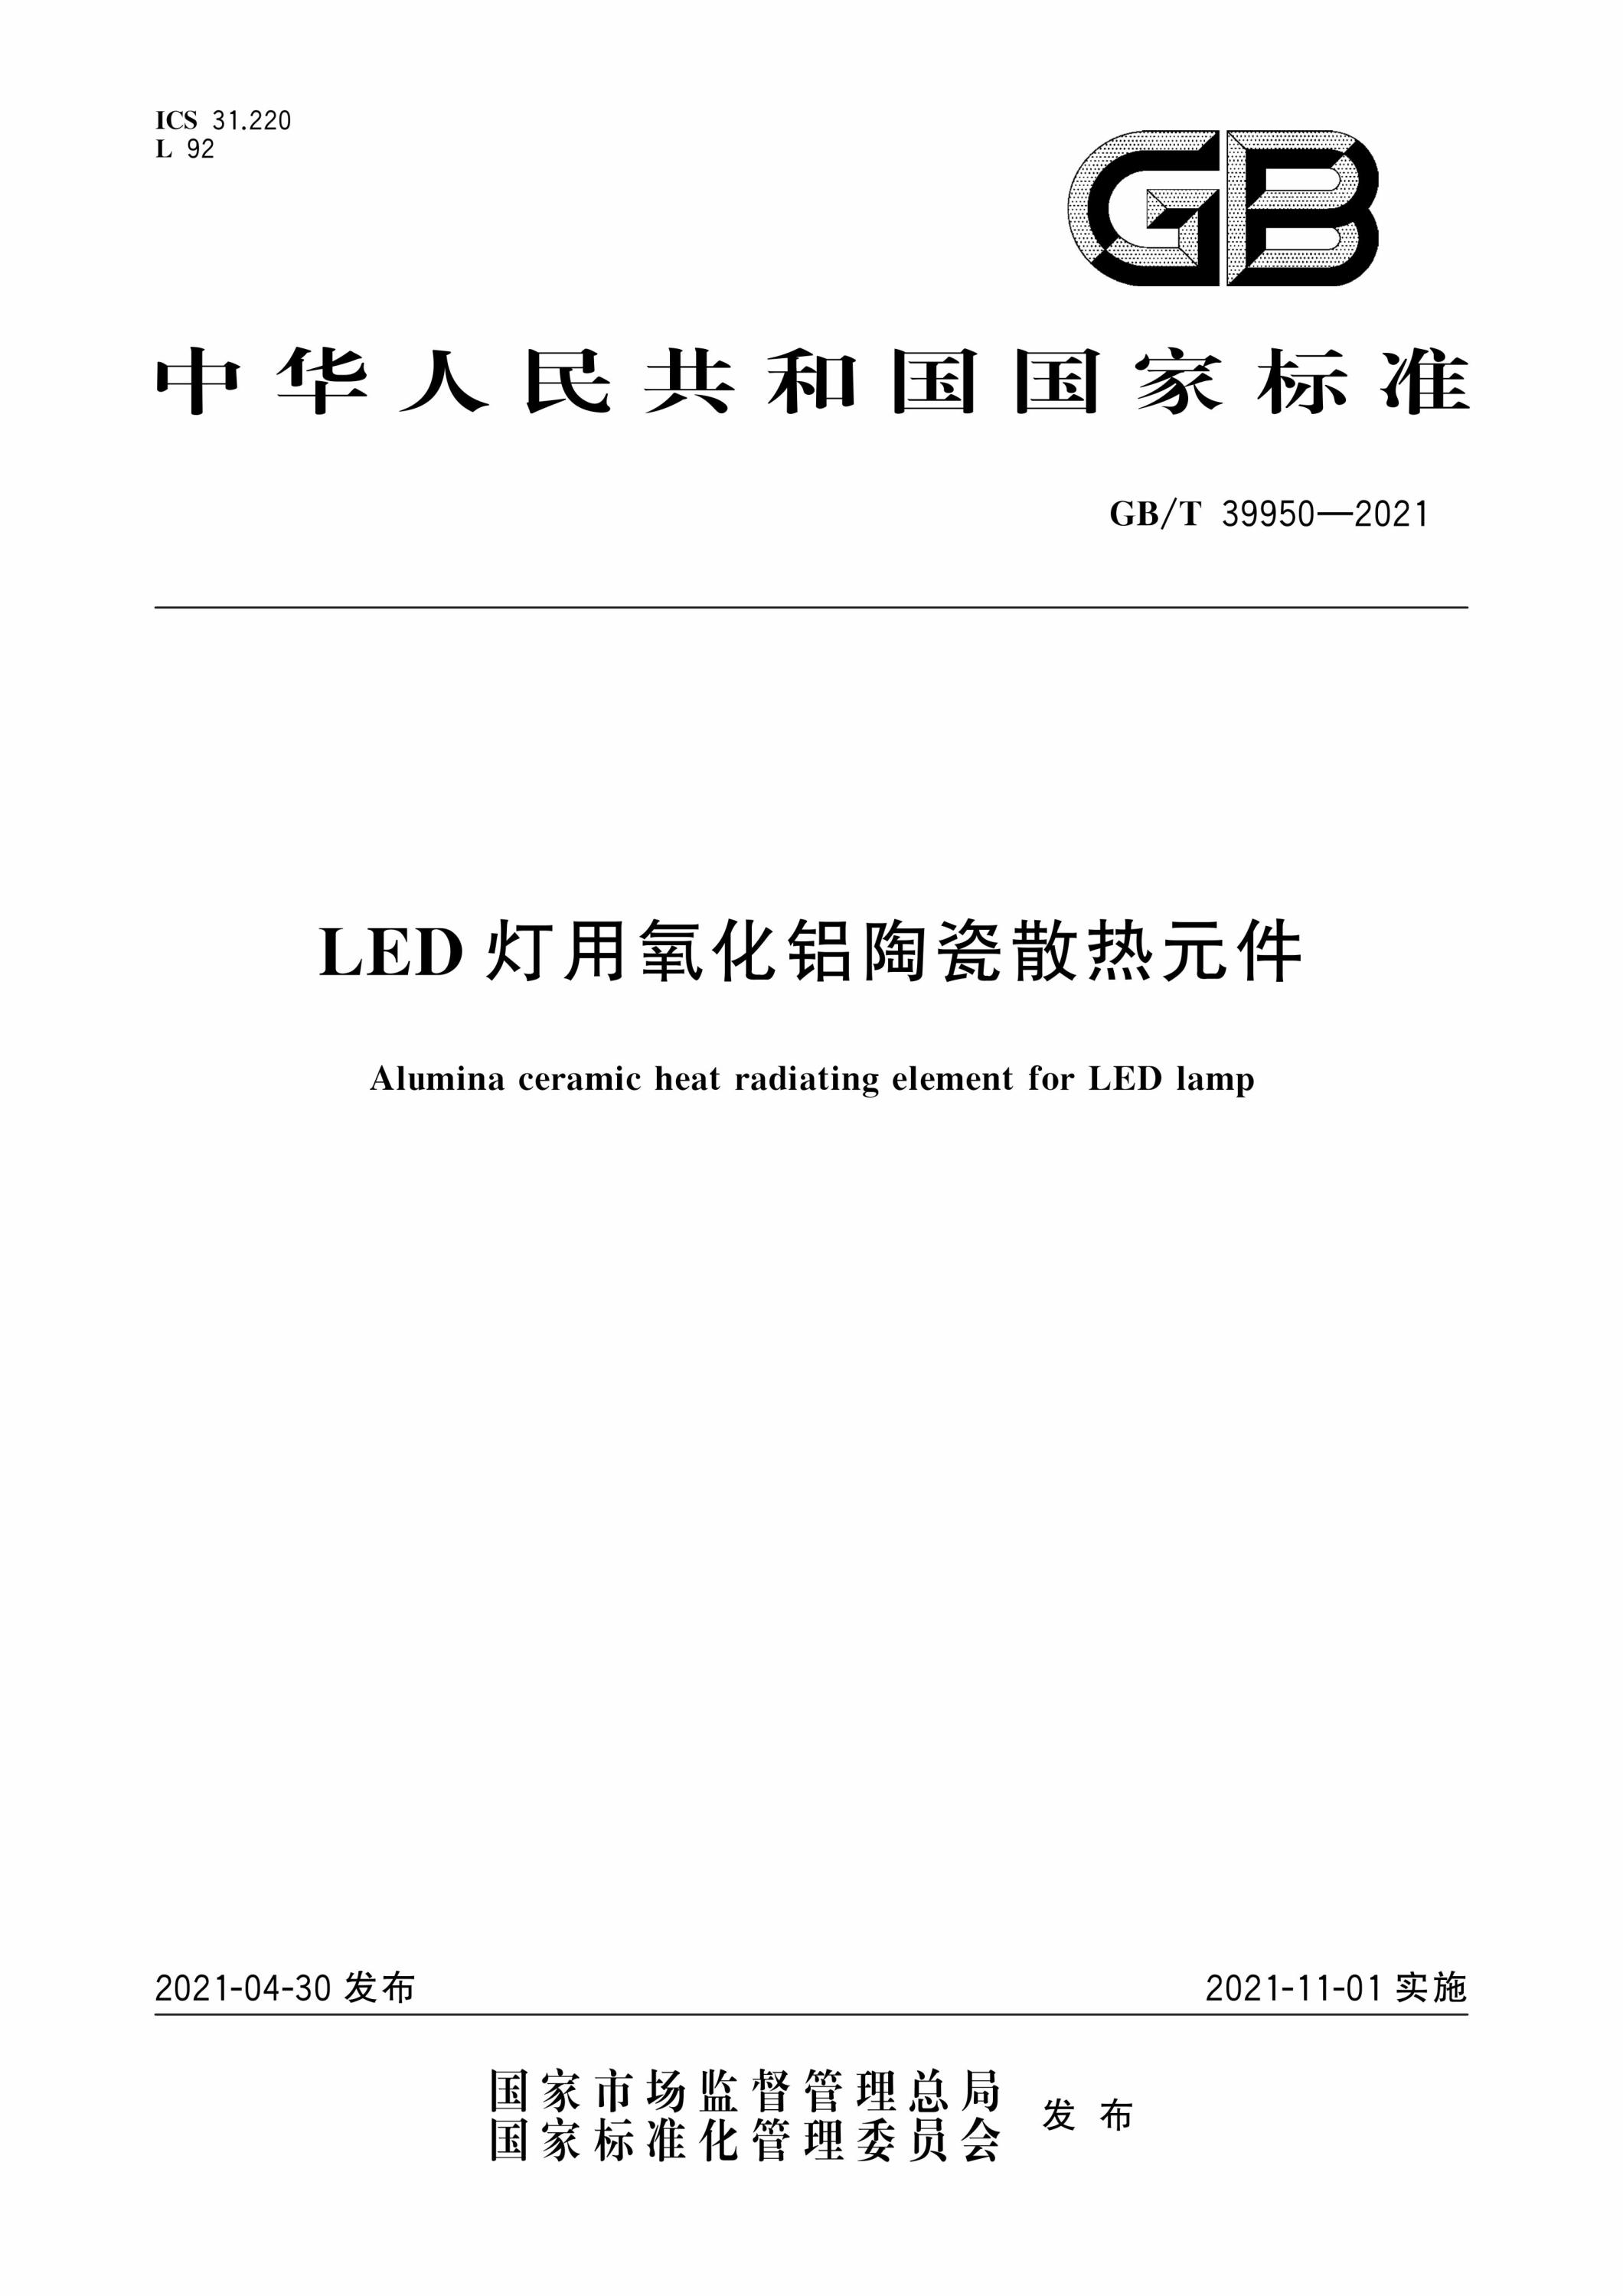 GB∕T 39950-2021 LED灯用氧化铝陶瓷散热元件资源截图